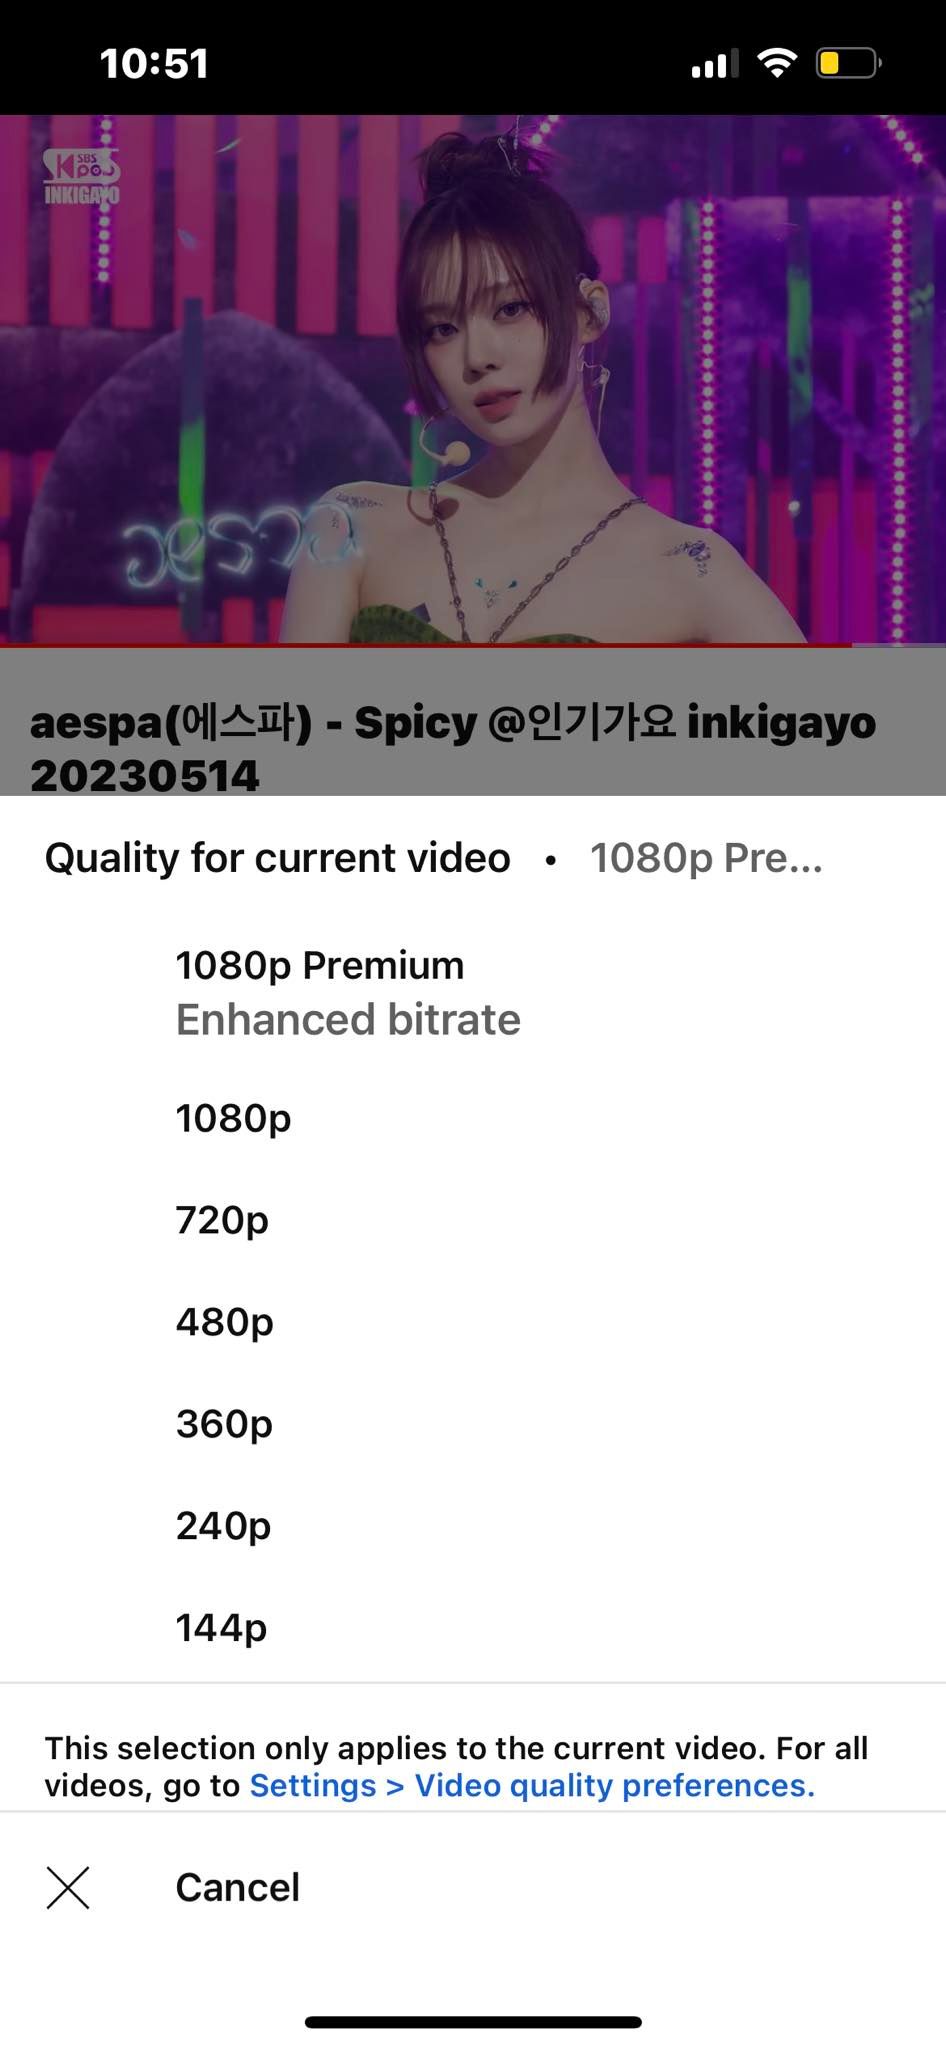 Memilih Opsi Premium 1080p Bitrate yang Disempurnakan di YouTube